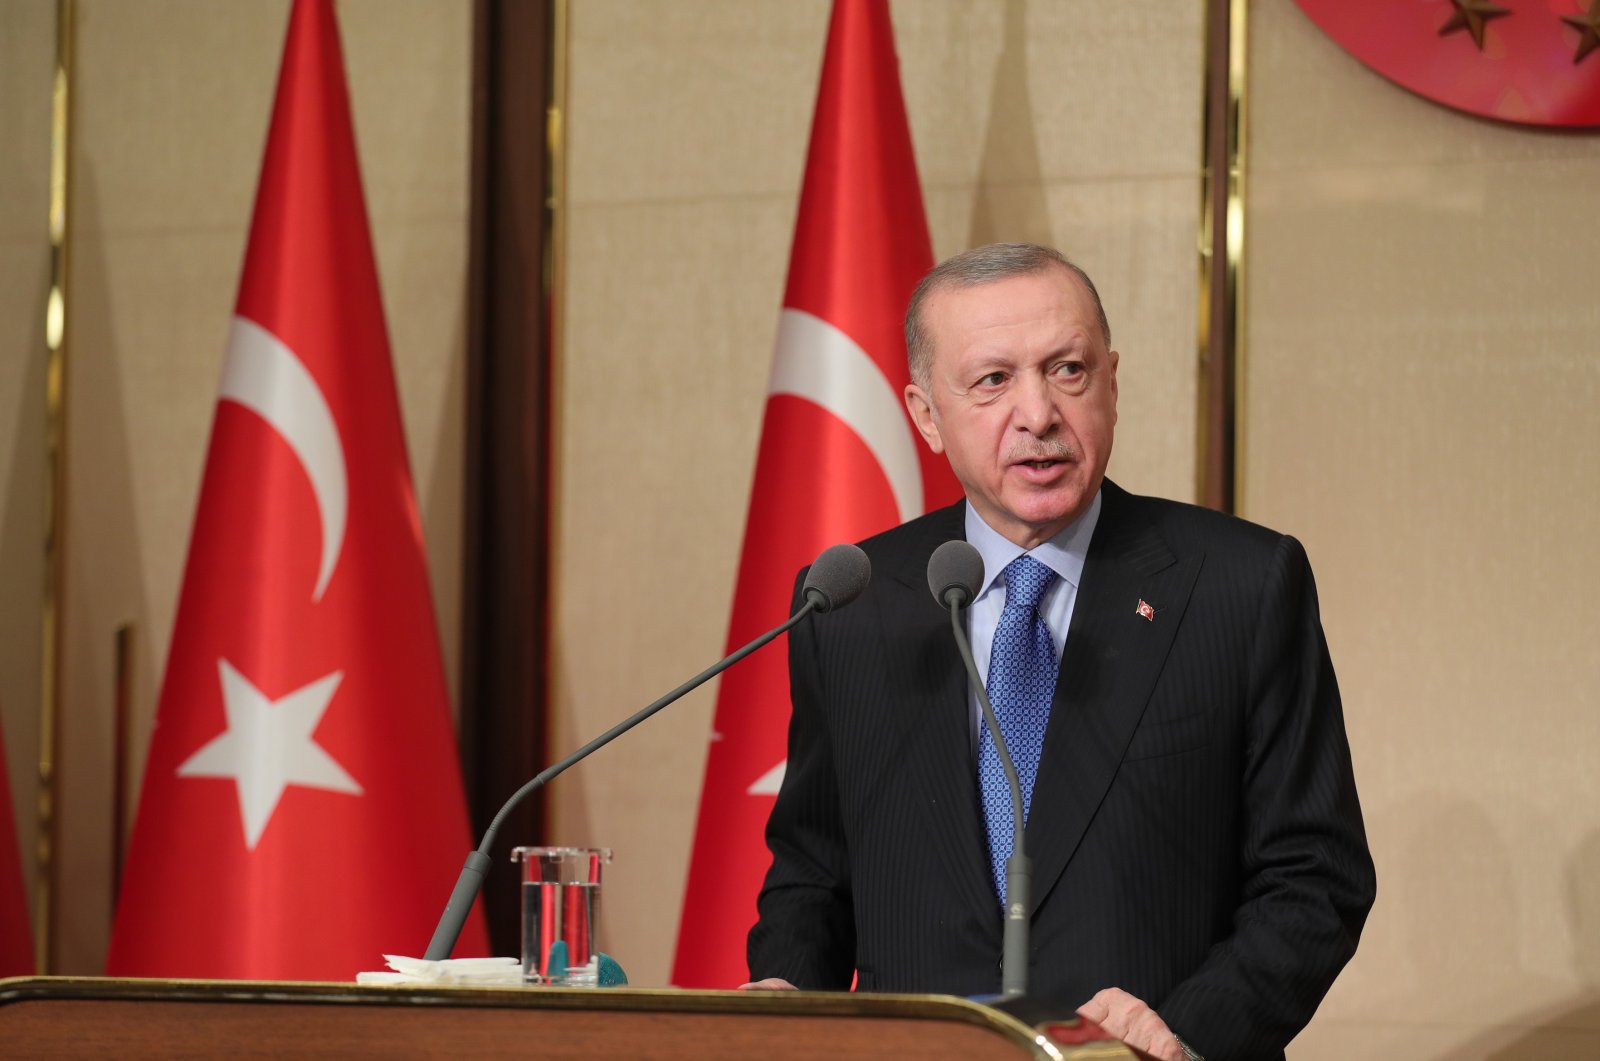 President Erdoğan speaks at an iftar dinner, April 21, 2022. (IHA Photo)